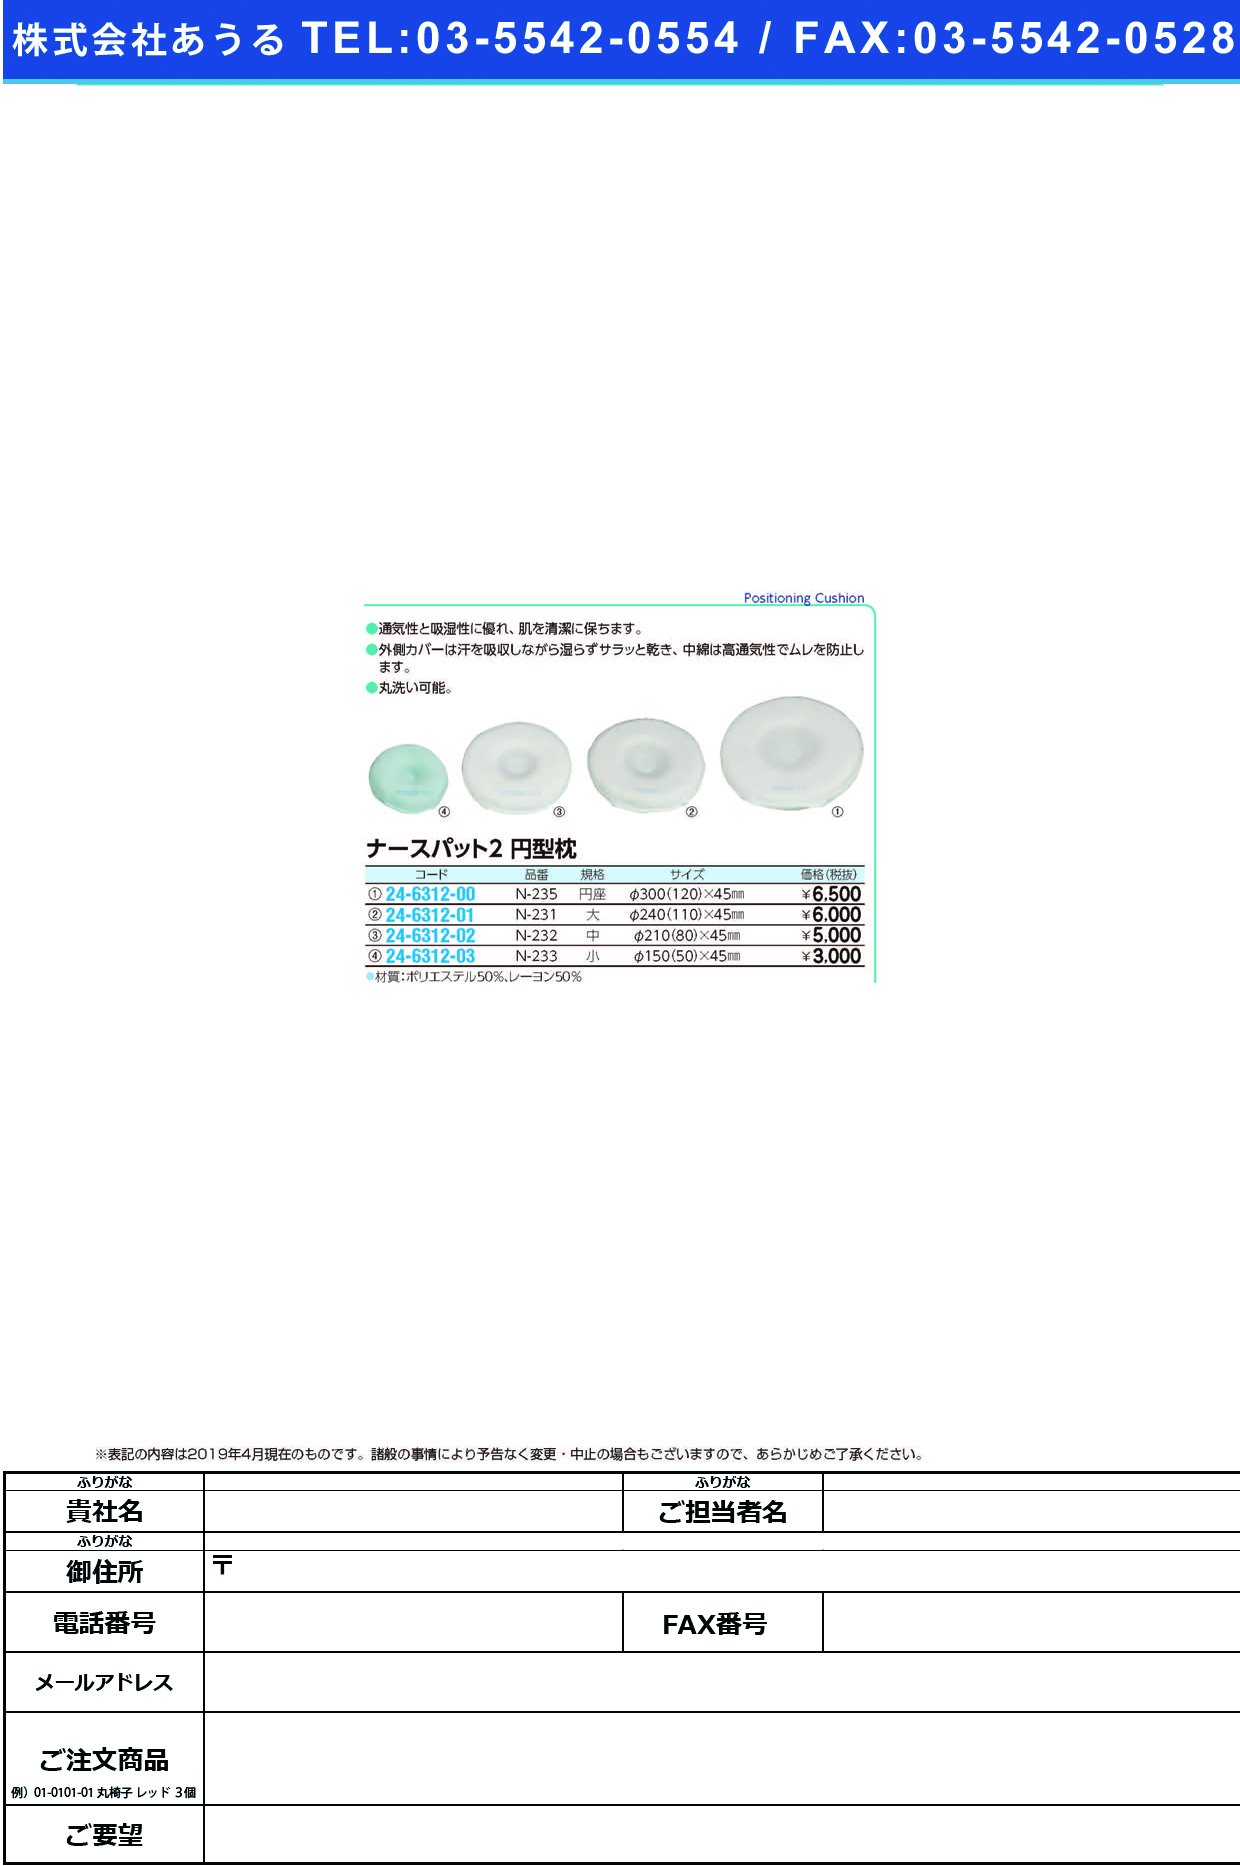 (24-6312-01)ナースパット２円型枕 N-231(ﾀﾞｲ) ﾅｰｽﾊﾟｯﾄ2ｴﾝｶﾞﾀﾏｸﾗ【1個単位】【2019年カタログ商品】